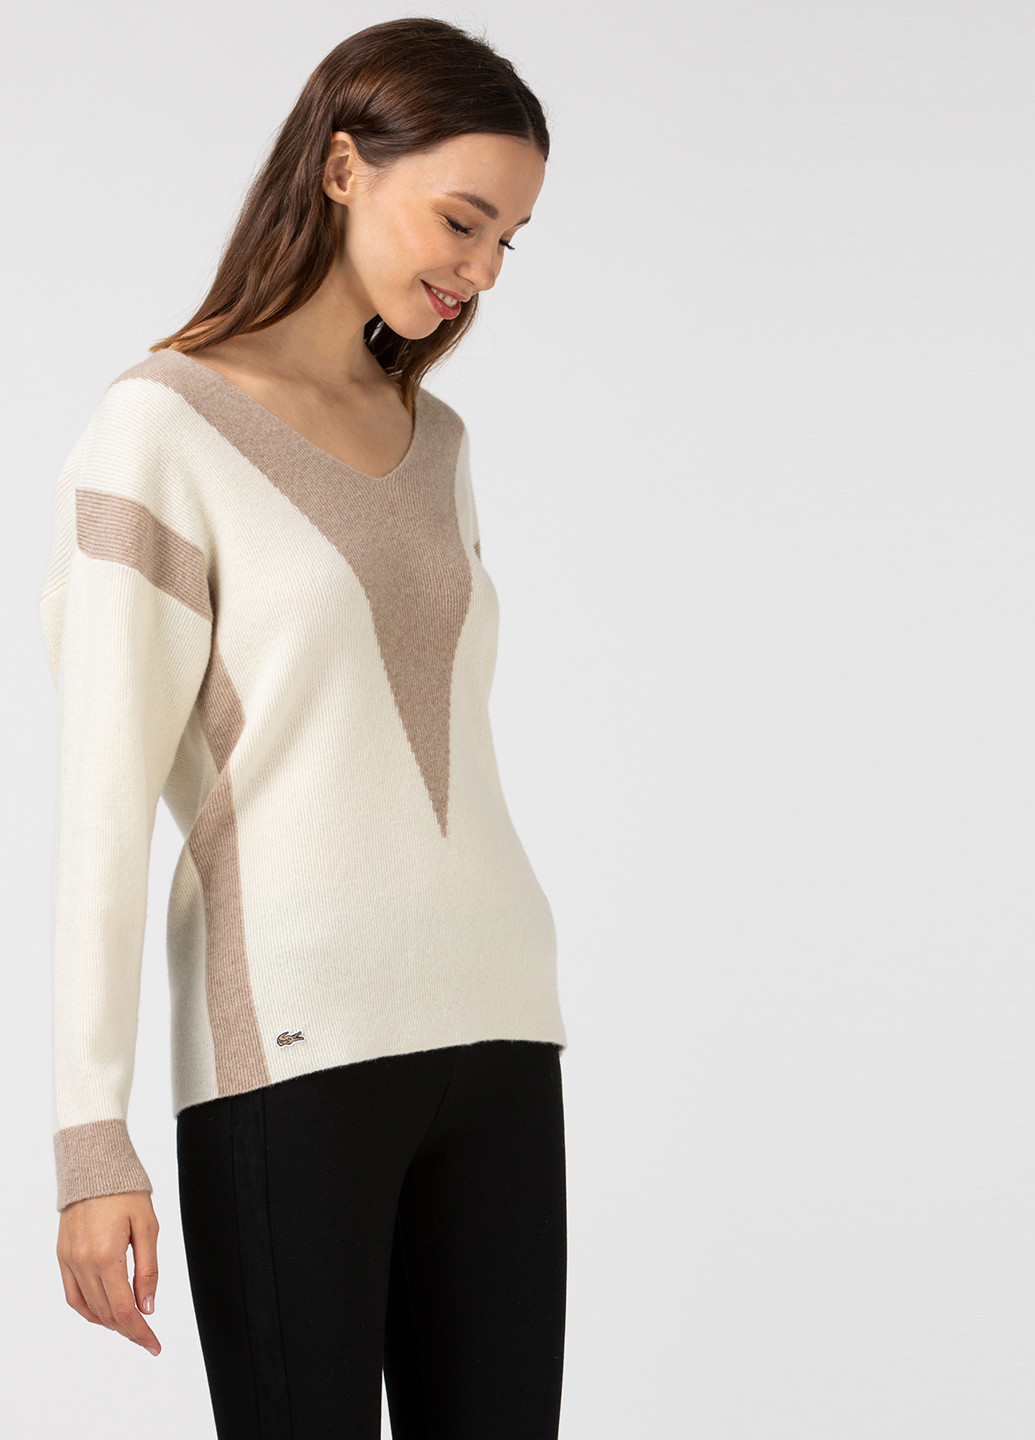 Молочный зимний пуловер пуловер Lacoste